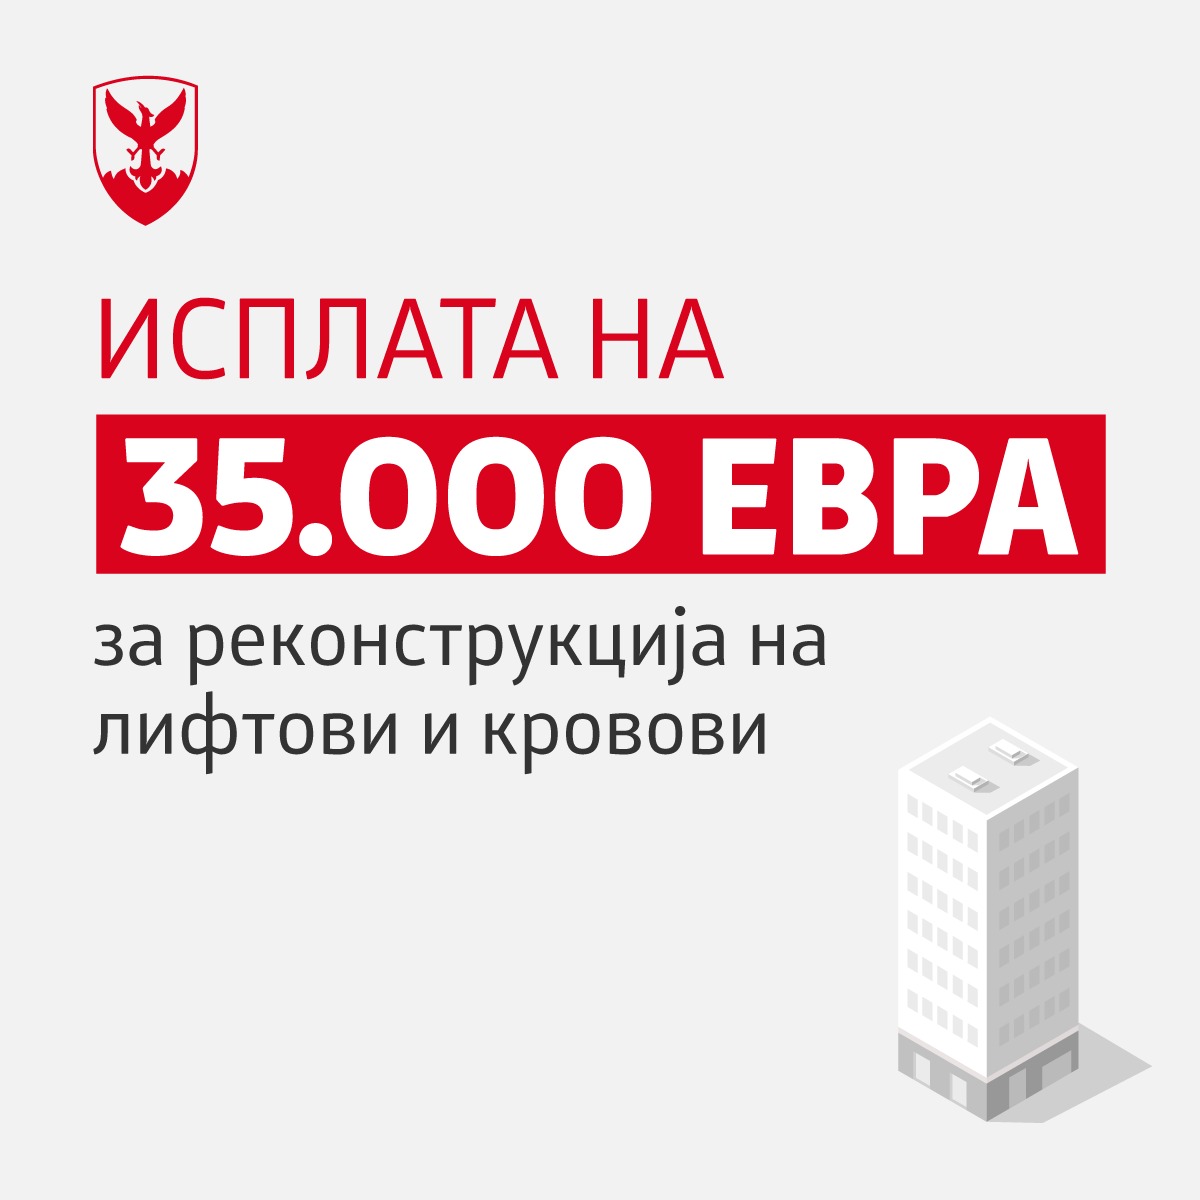 Општина Центар ја започна исплатата за поправка и санација на кровови и лифтови во вредност од 35.000 евра